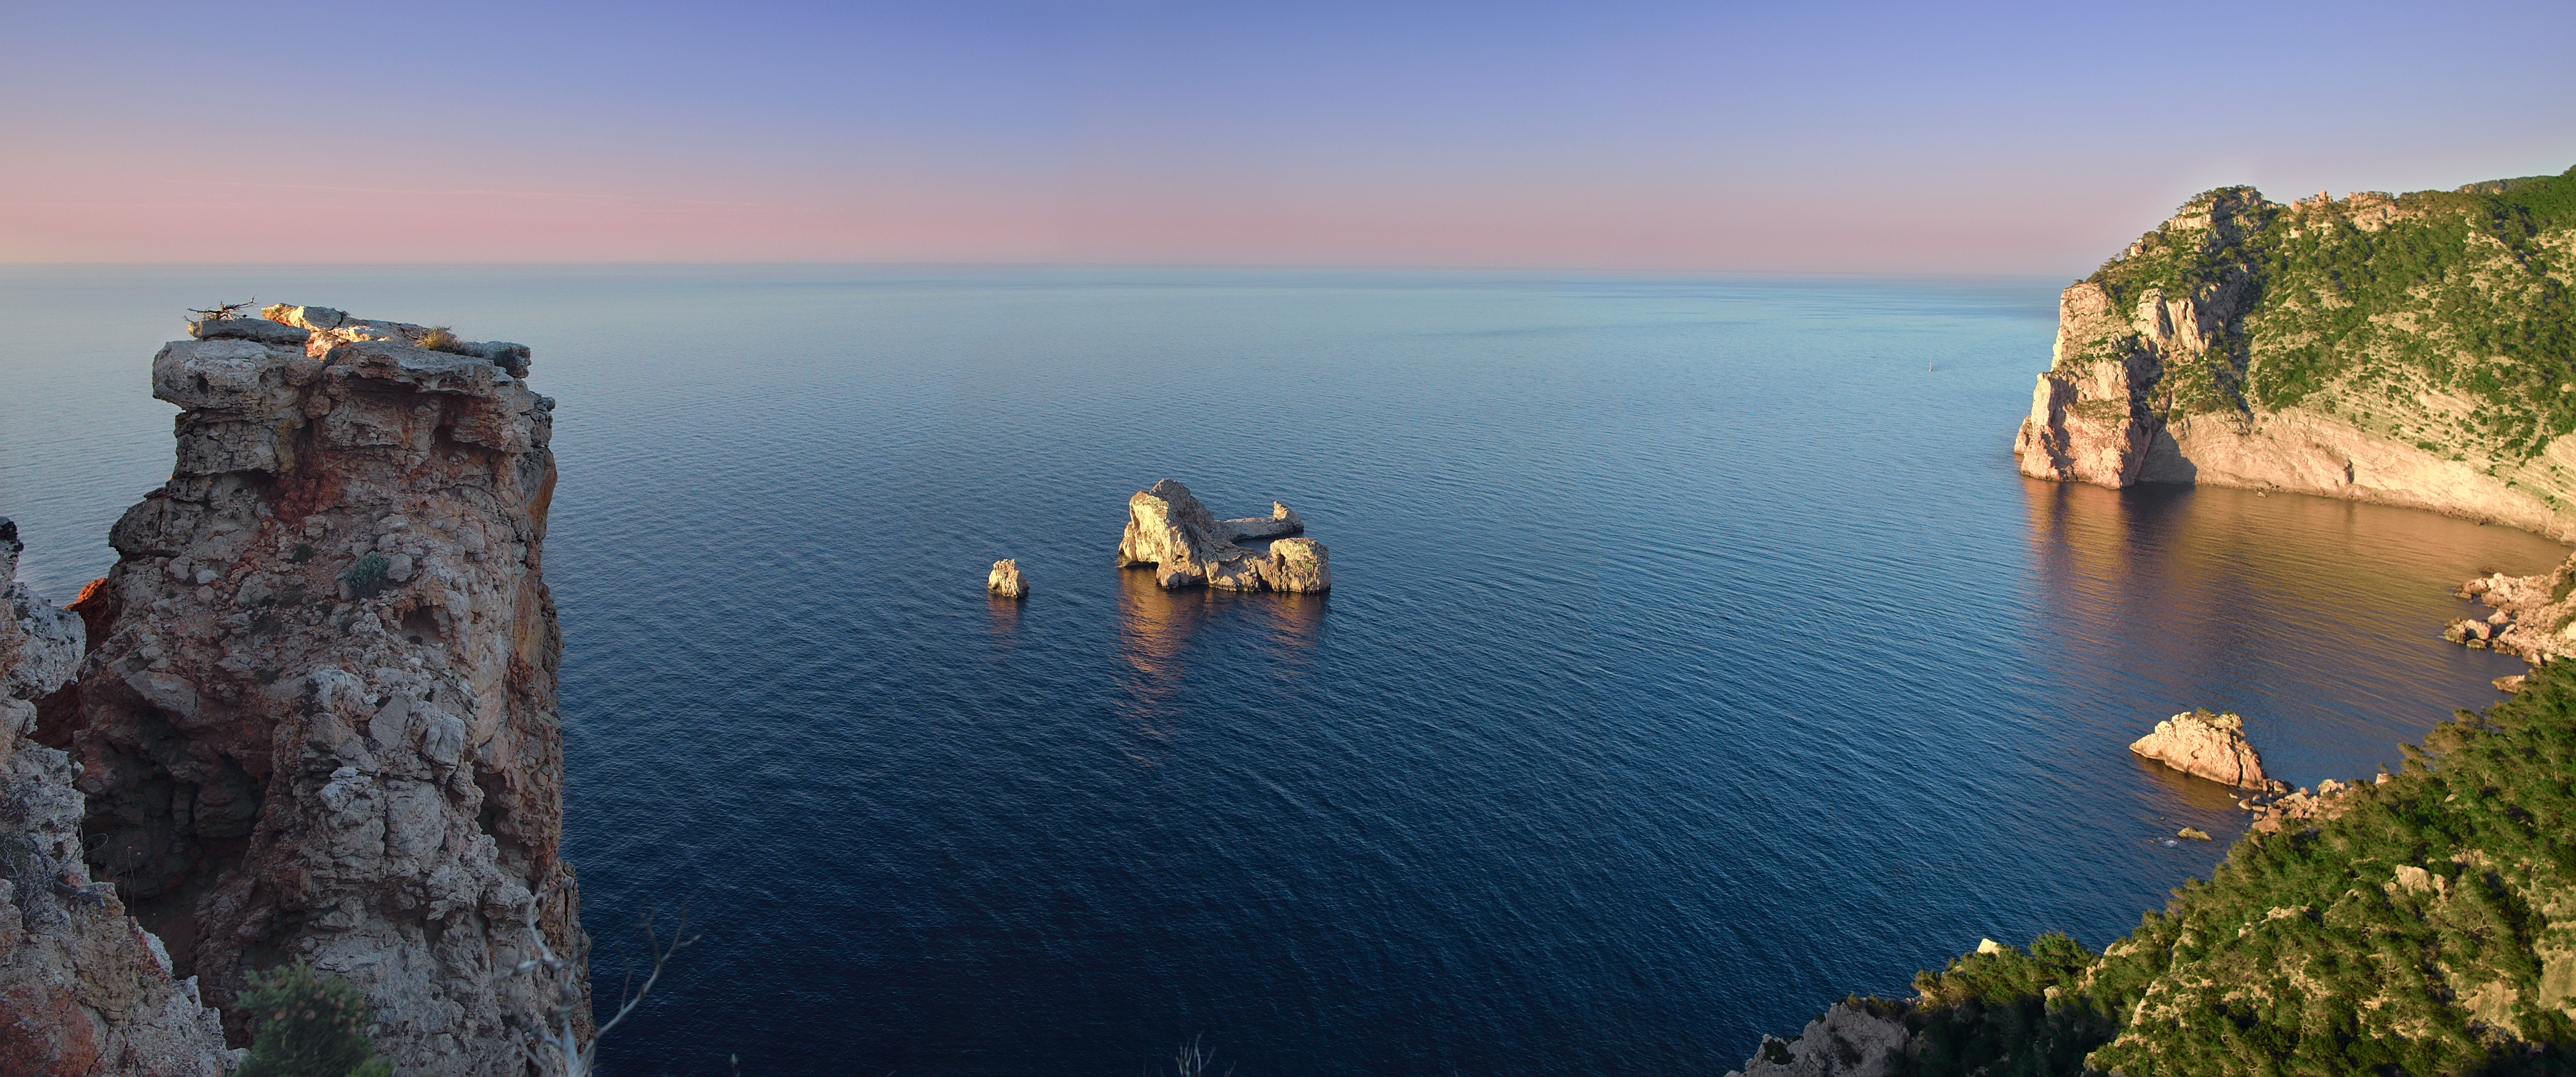 Ruhe und Erholung im Norden von Ibiza: Die Vorzüge dieser schönen Region 